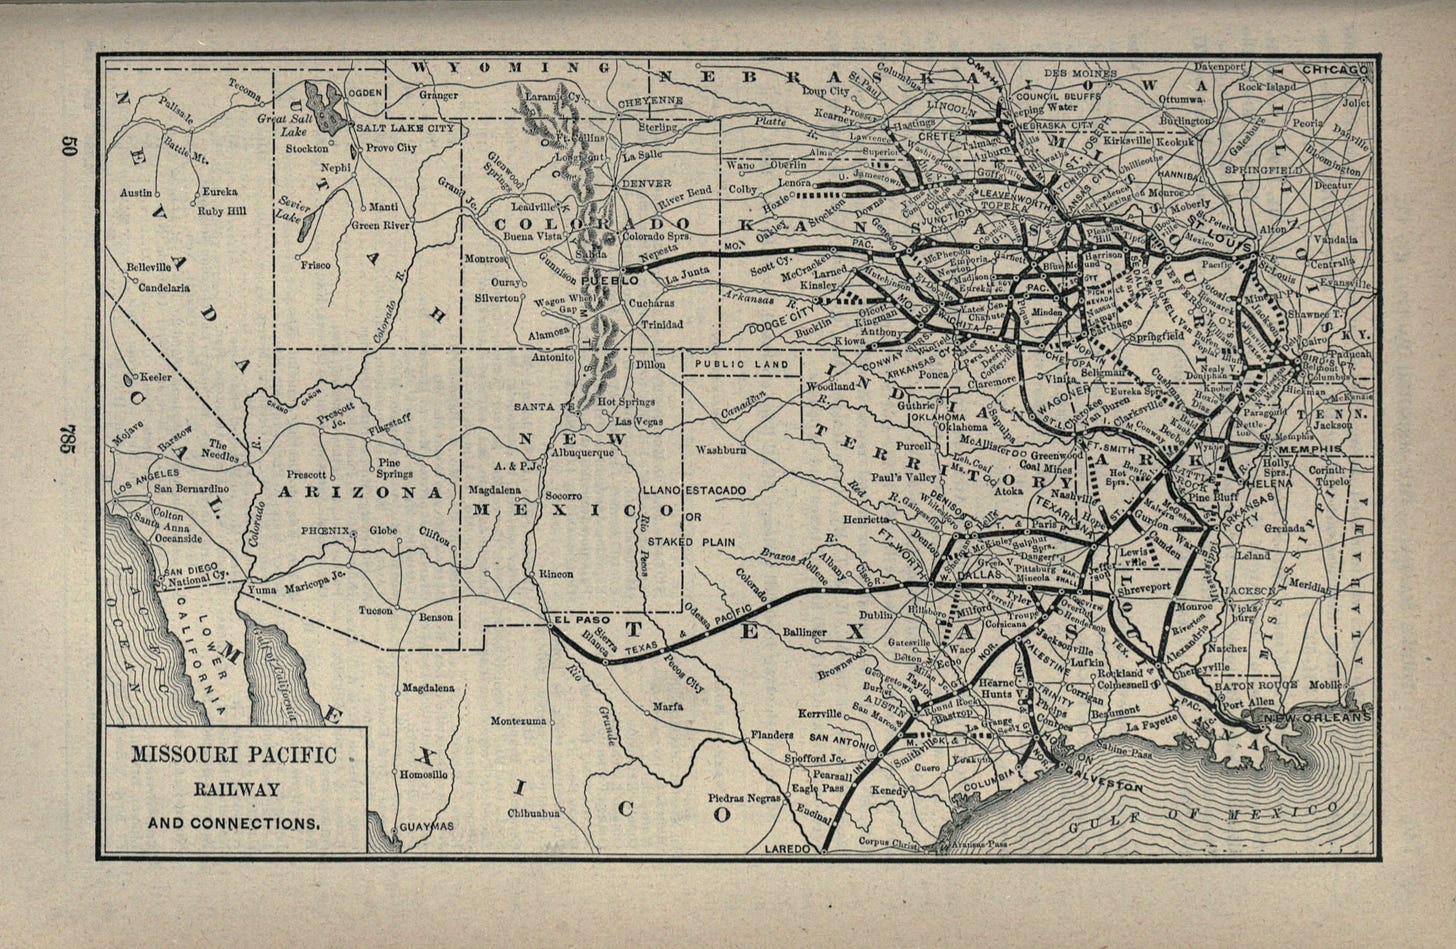 Missouri Pacific Railroad - Wikipedia